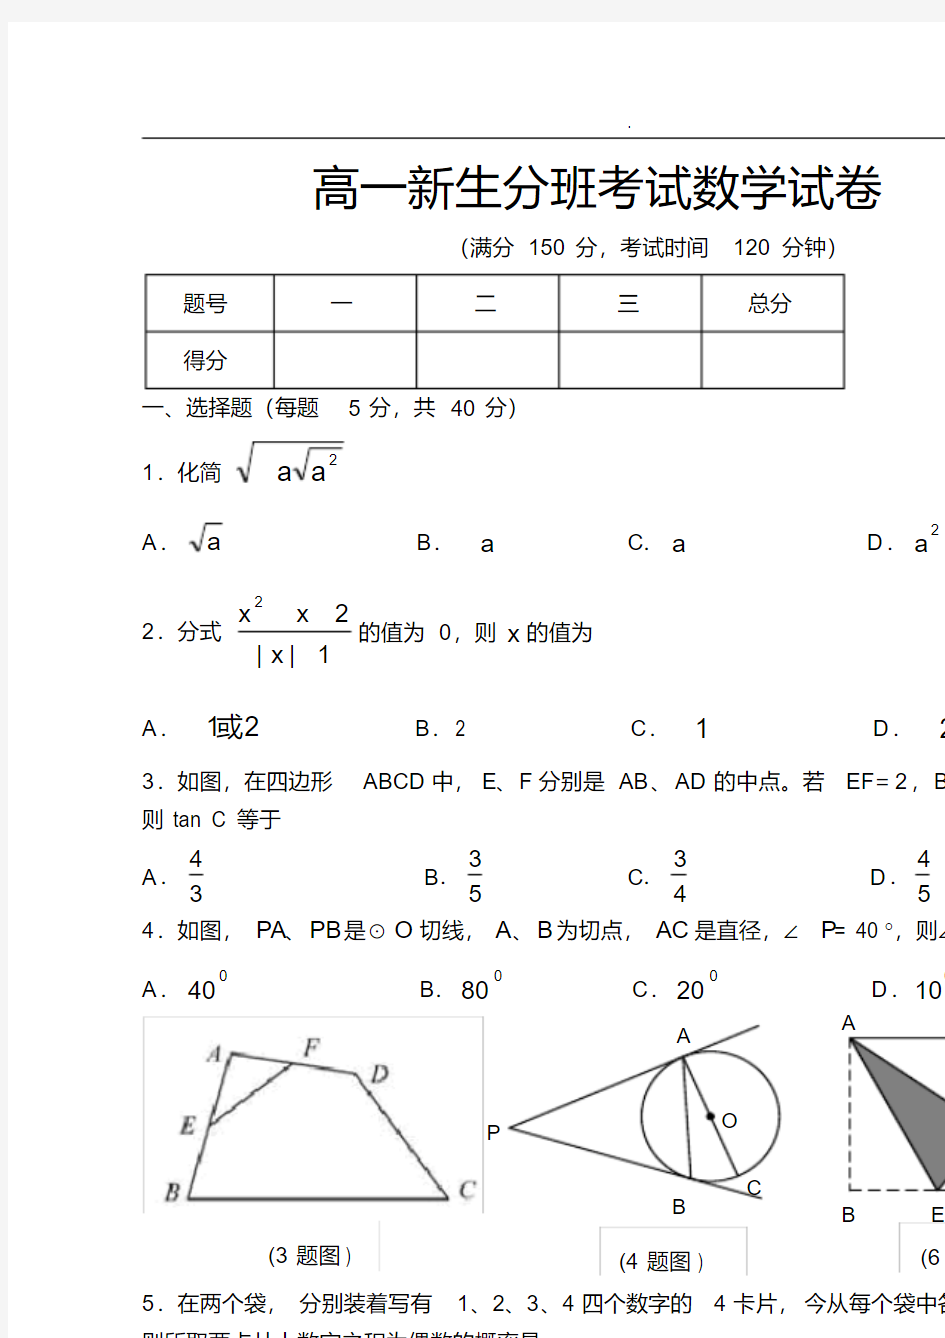 广雅中学高一新生分班考试数学试卷(含答案)